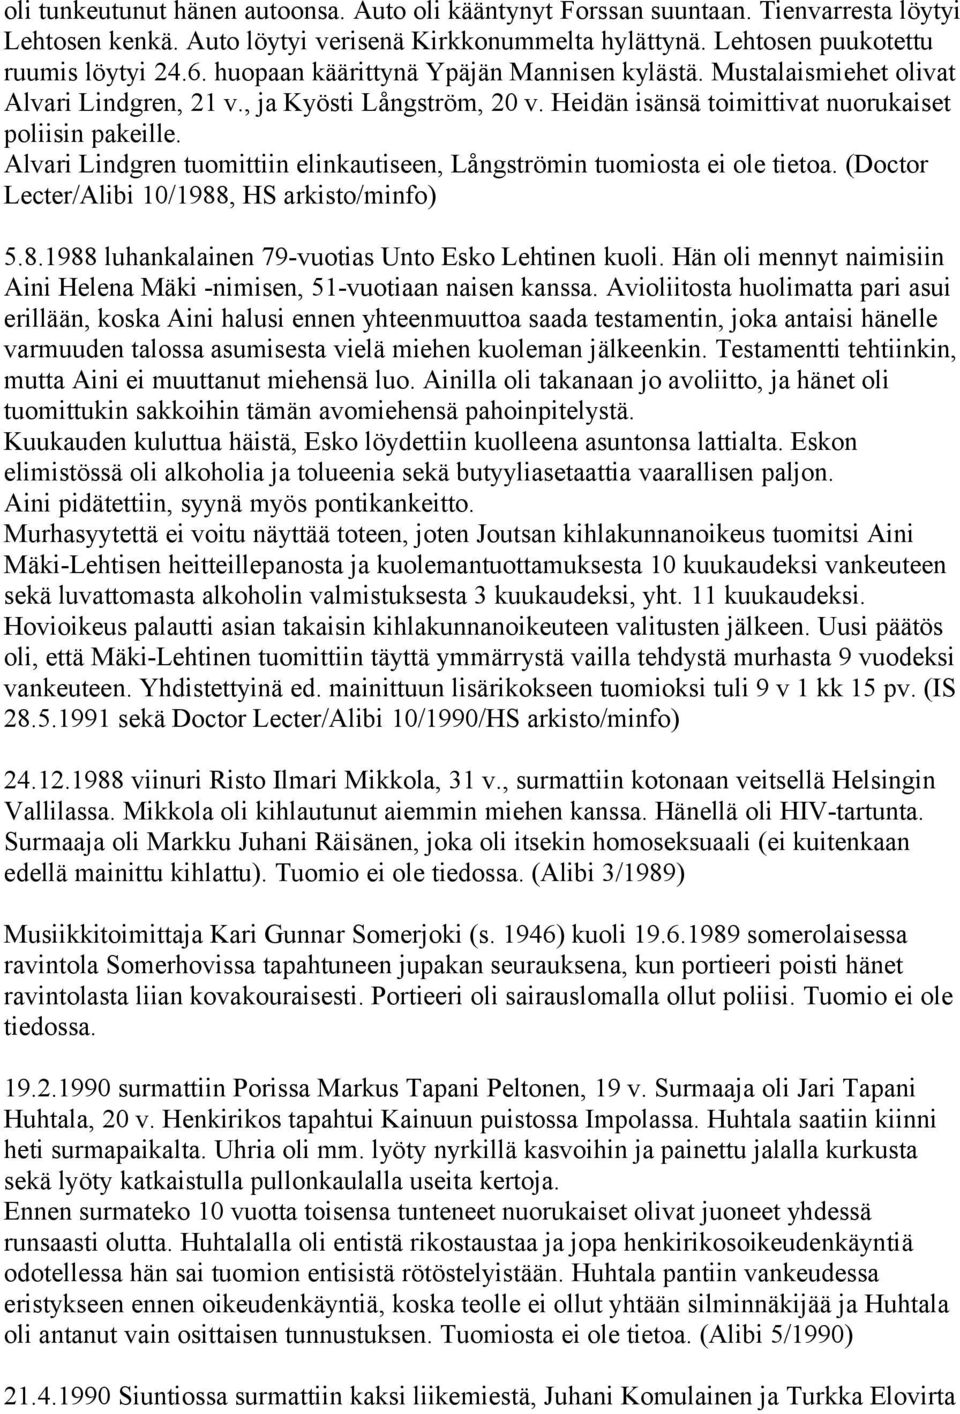 Alvari Lindgren tuomittiin elinkautiseen, Långströmin tuomiosta ei ole tietoa. (Doctor Lecter/Alibi 10/1988, HS arkisto/minfo) 5.8.1988 luhankalainen 79-vuotias Unto Esko Lehtinen kuoli.